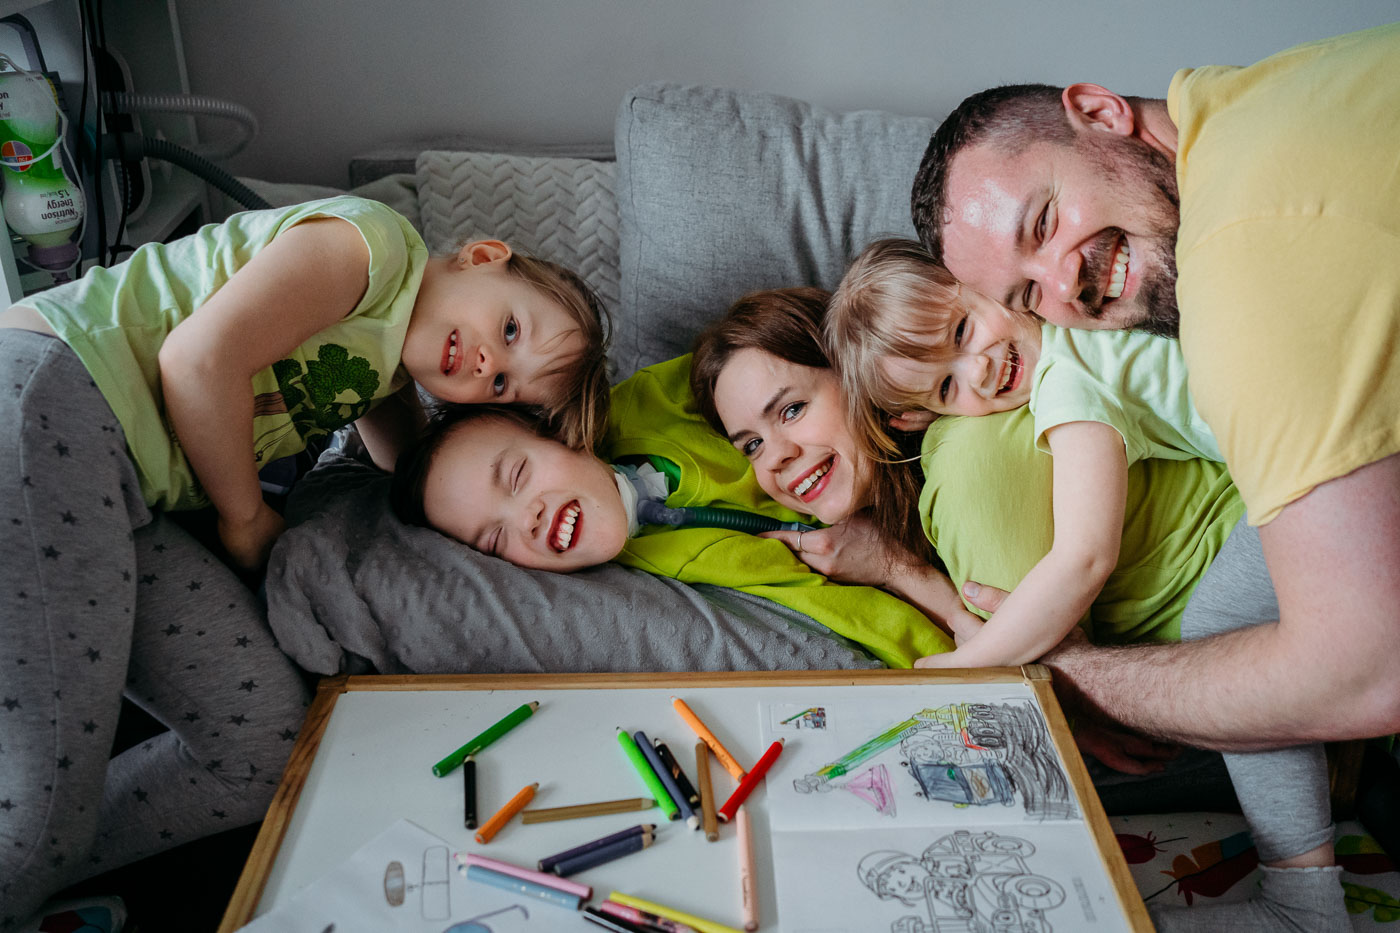 Kadr z rodzinnej sesji lifestylowej, rodzice z dziećmi wspólnie spędzają czas rysując